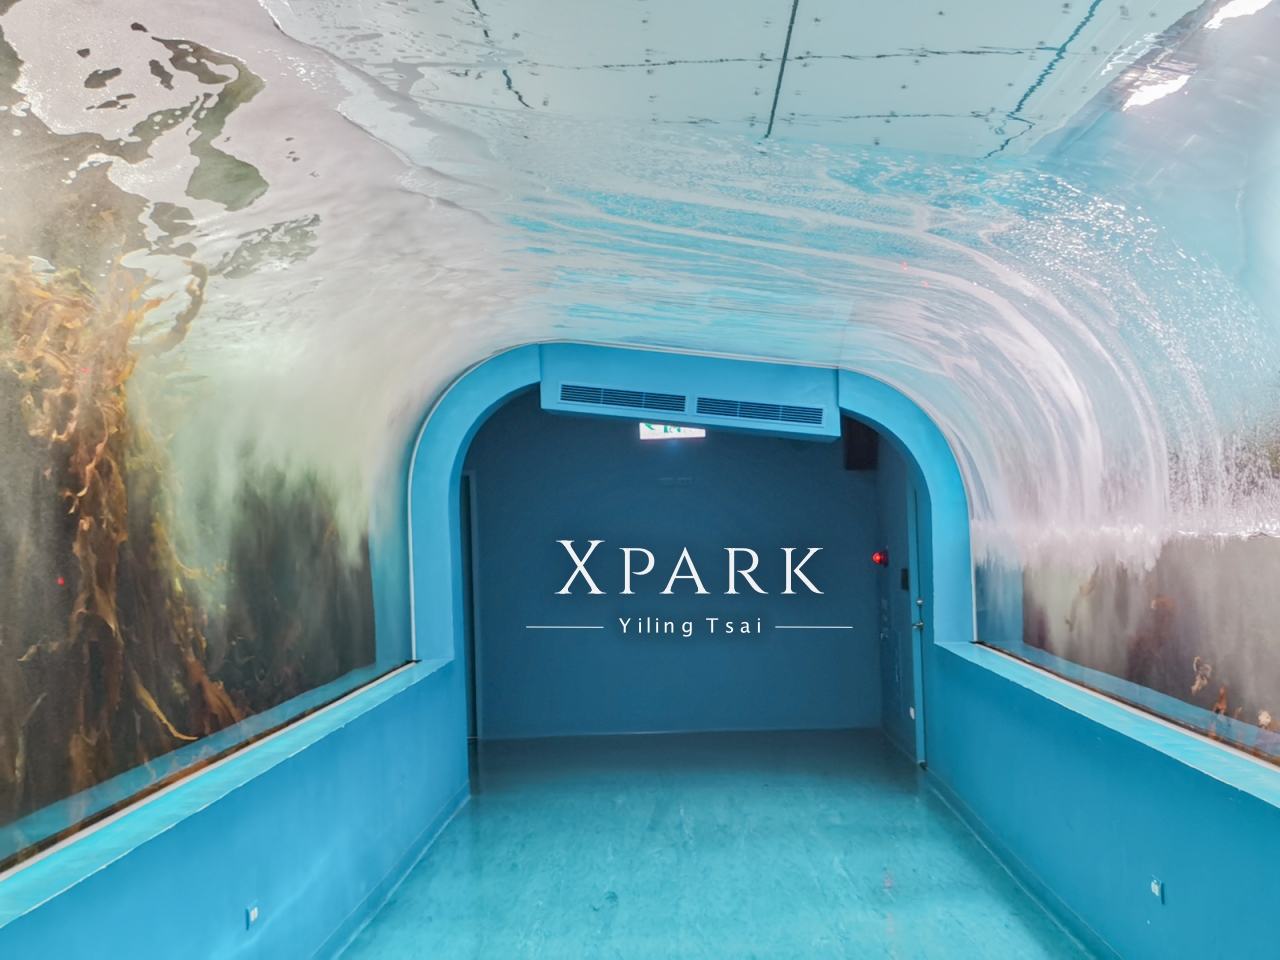 桃園景點 XPARK 都會型水生公園參觀攻略 門票優惠、交通路線、熱門展區介紹